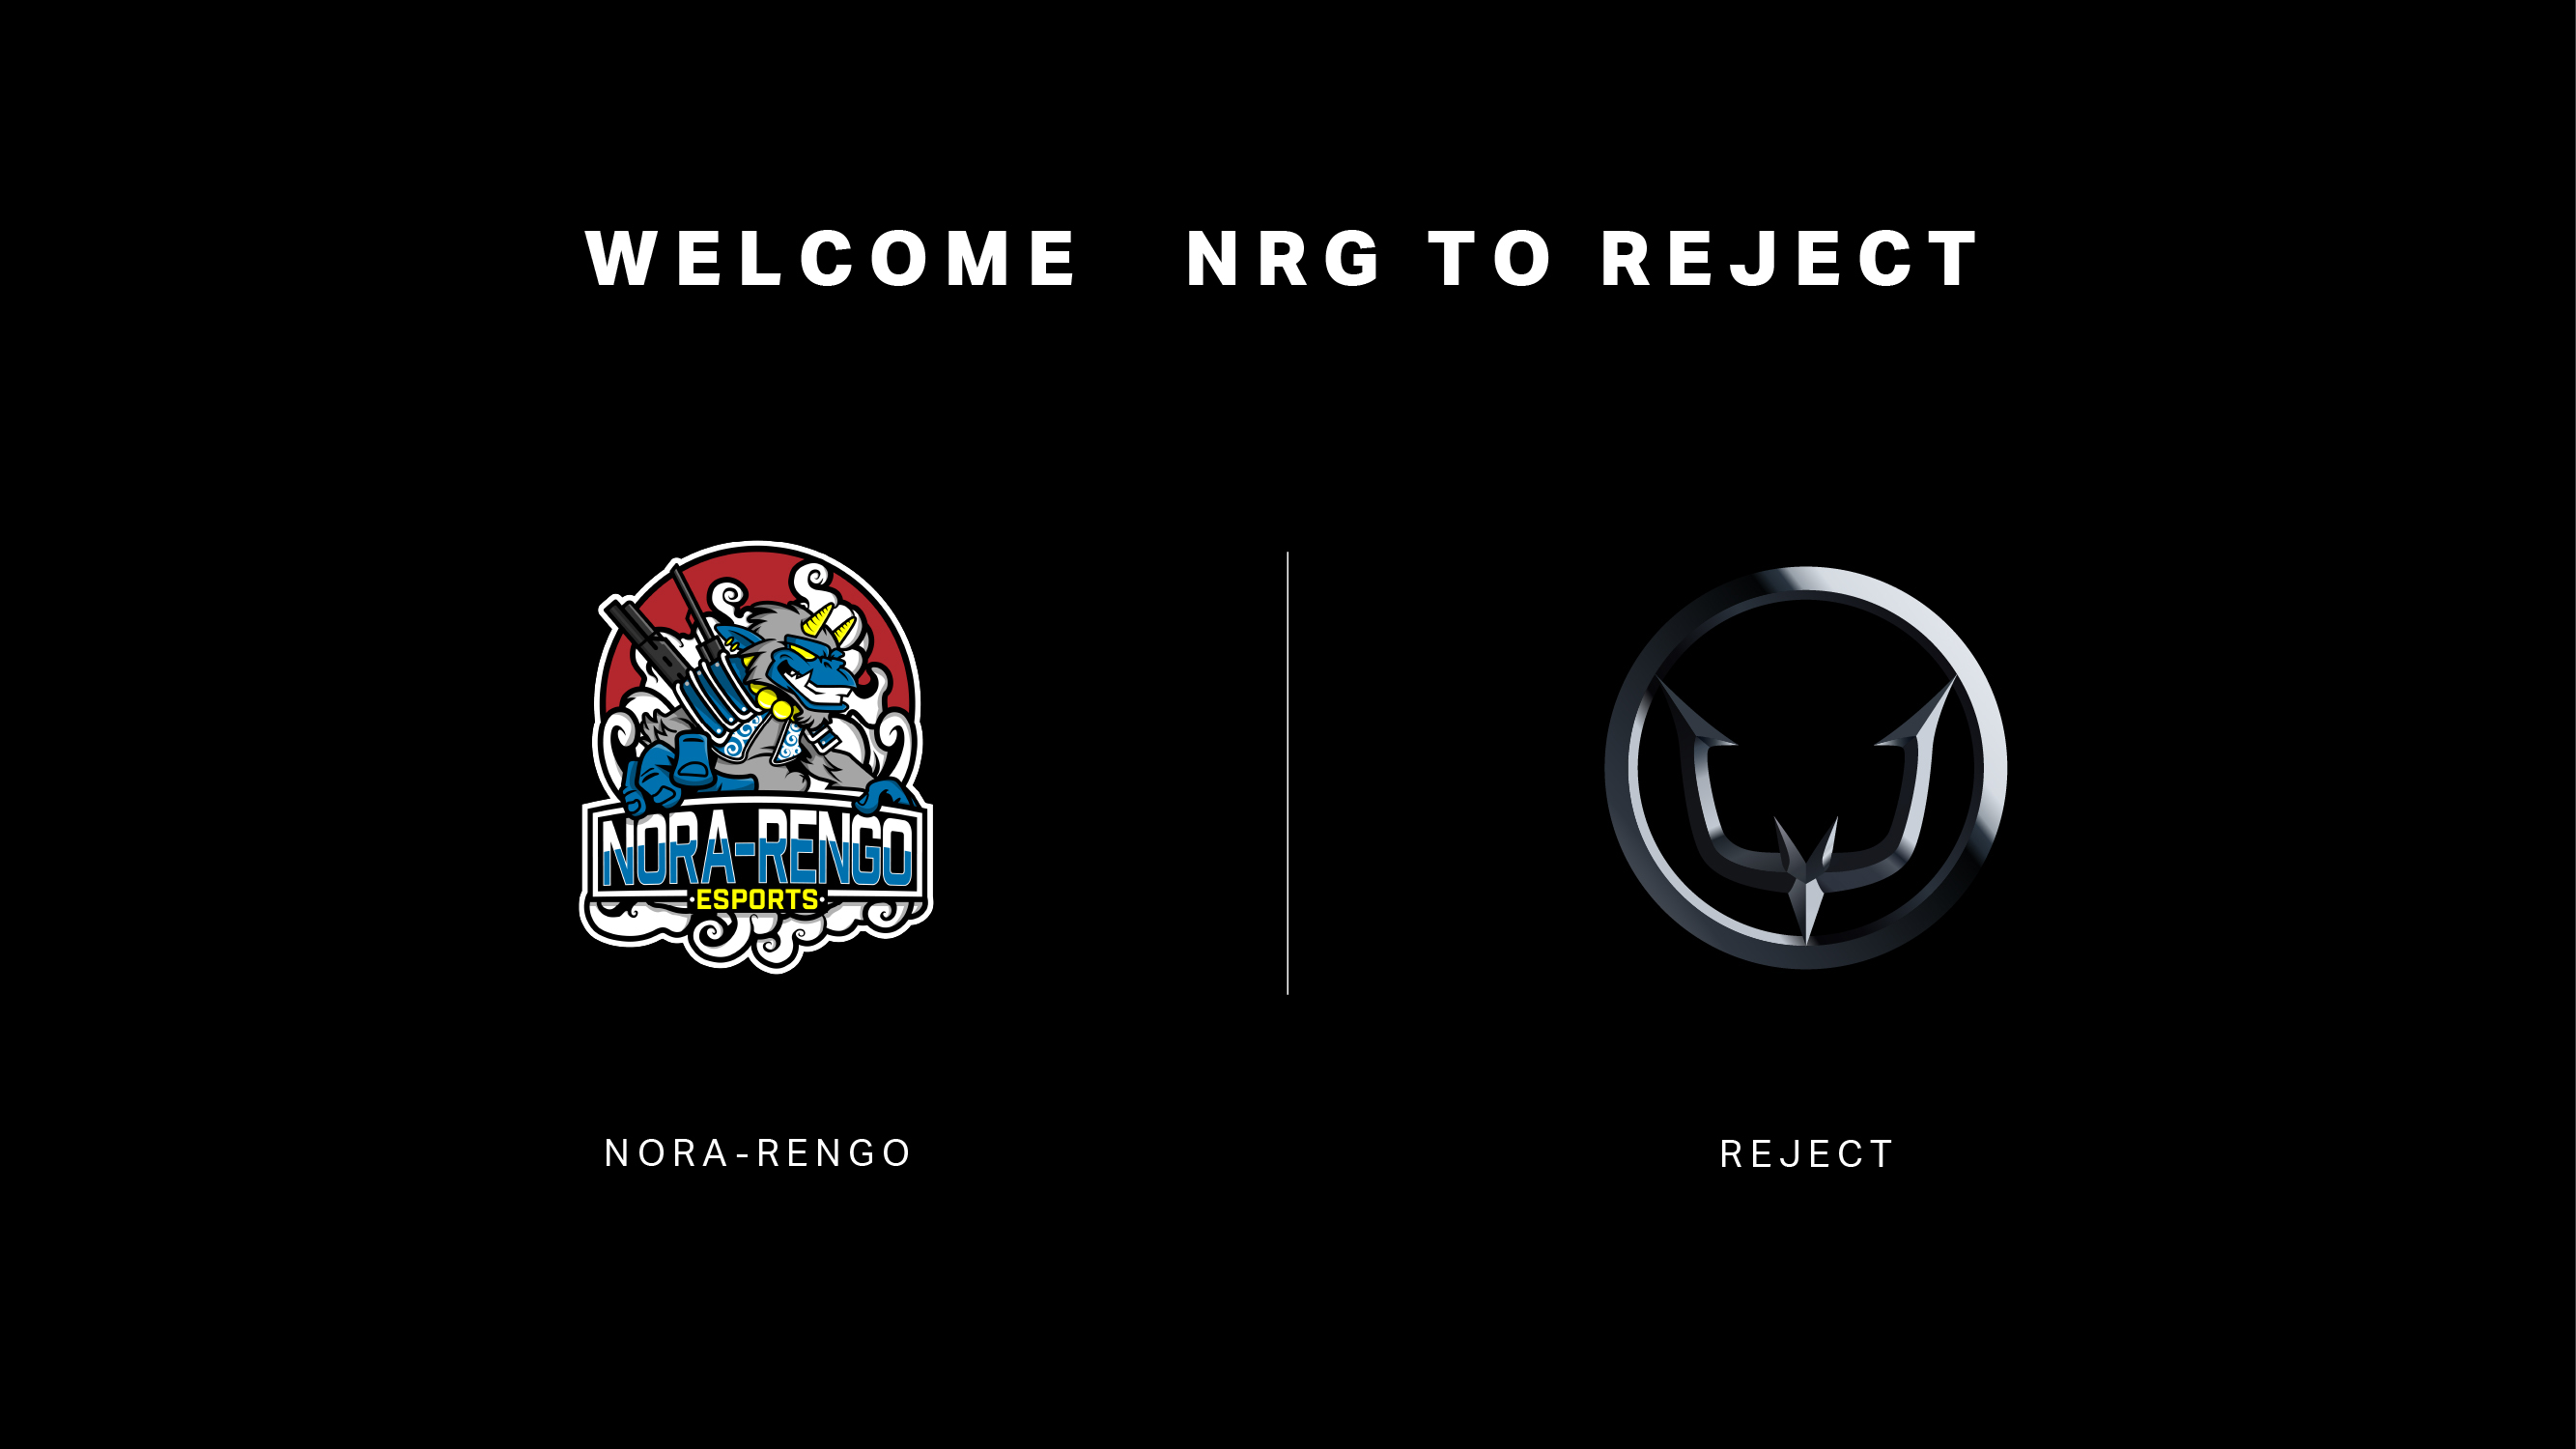 プロeスポーツチーム Reject 強豪チーム 野良連合 のrainbow Six Siege部門 Nrg を買収 株式会社rejectのプレスリリース